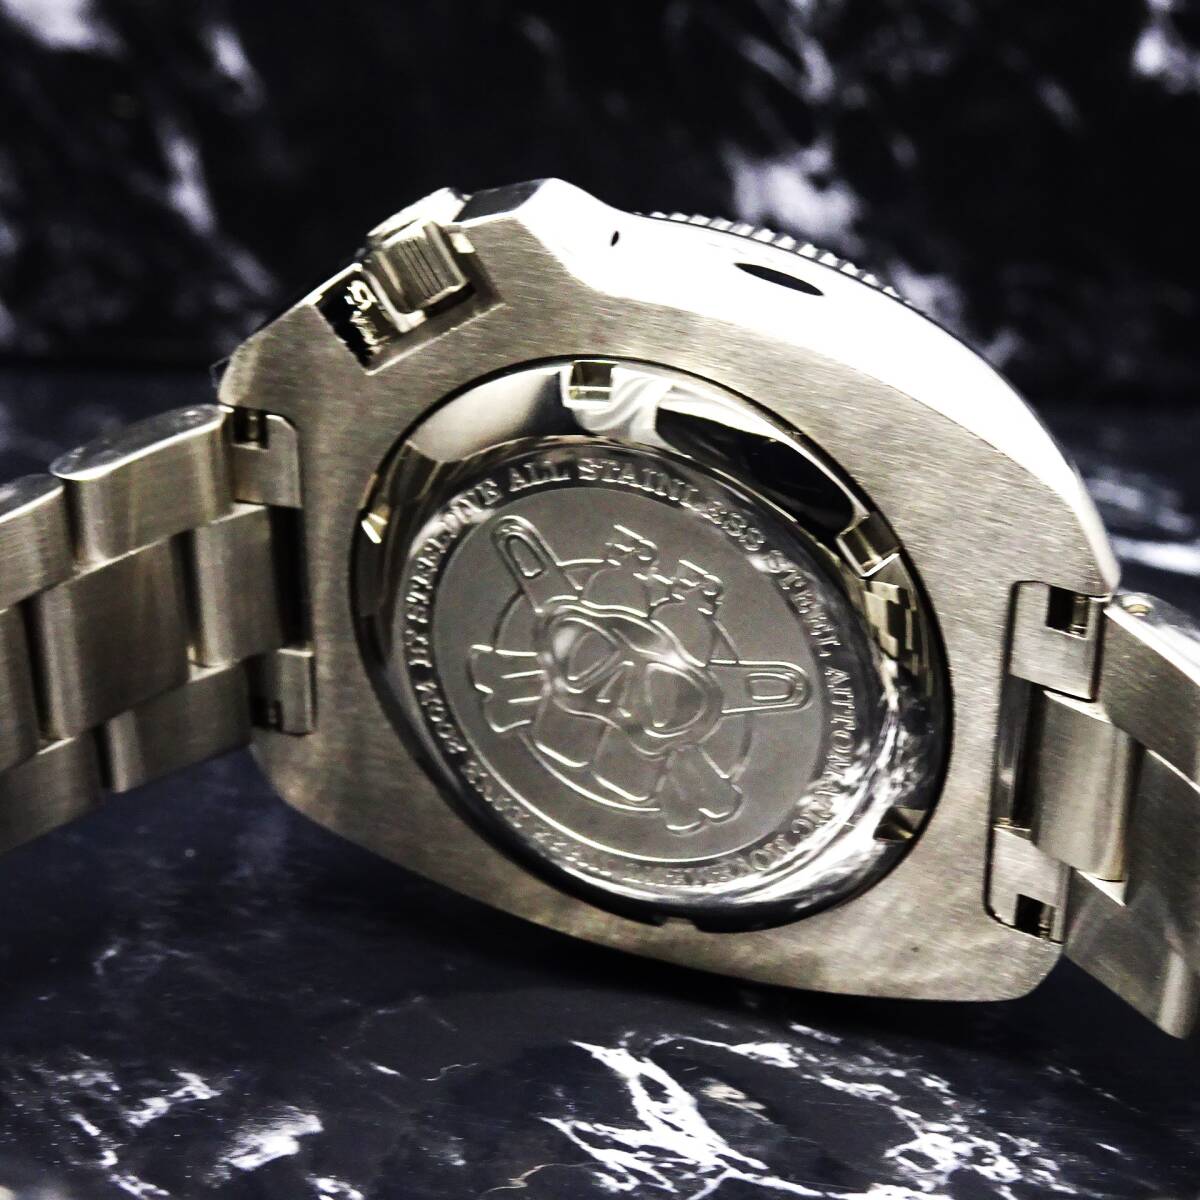 送料無料〓新品〓steeldiveブランド・200m防水・NH35メカニカル機械式・アワビダイバー腕時計・オマージュウオッチ・フルメタル・ブラック